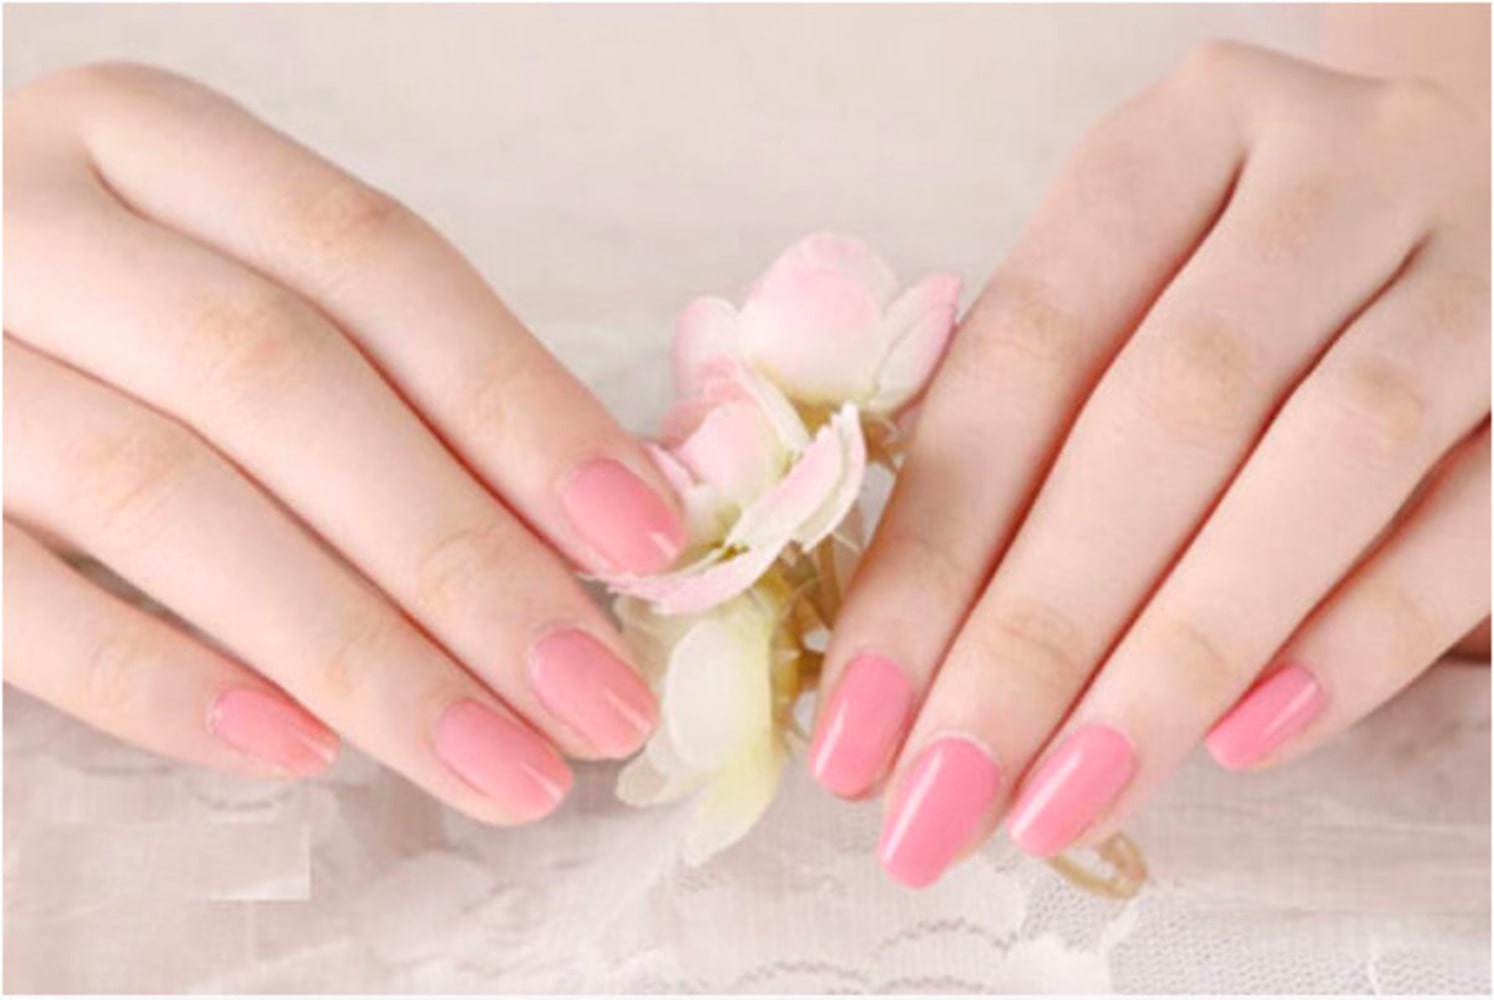 Điểm danh những mẫu nail màu hồng siêu hot, nàng nên rủ rê hội bạn triển ngay mùa Tết này - 15